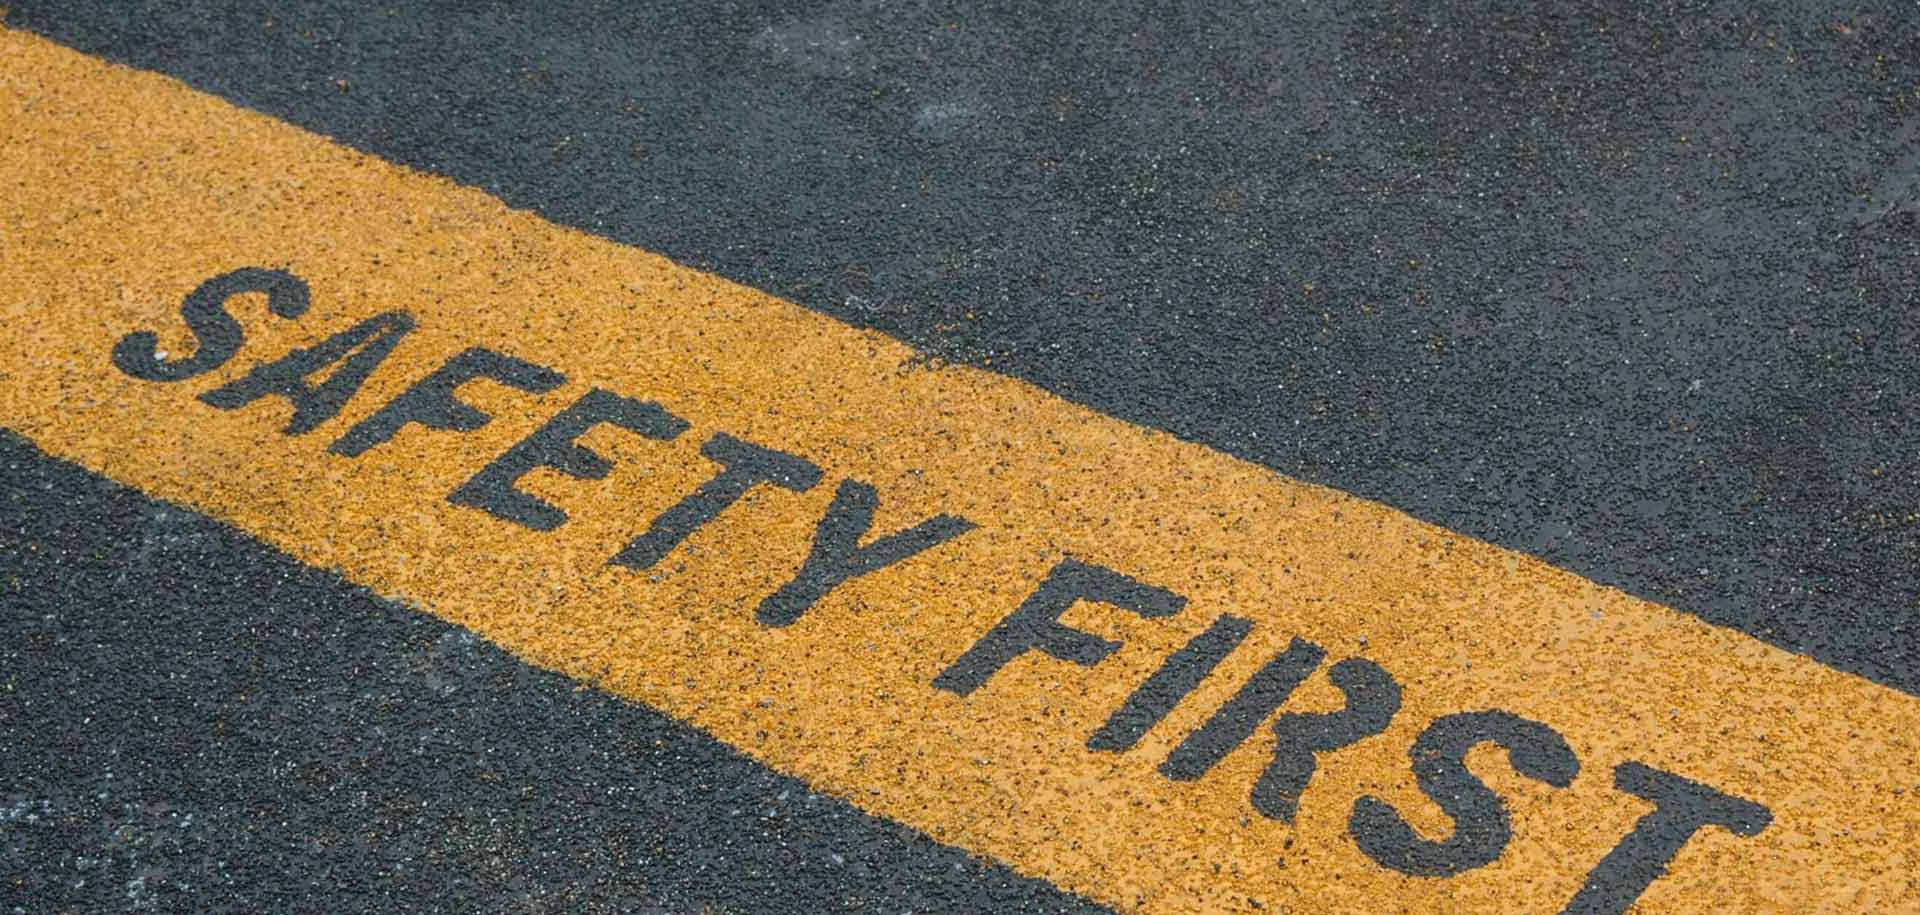 'Safety first' written on ground